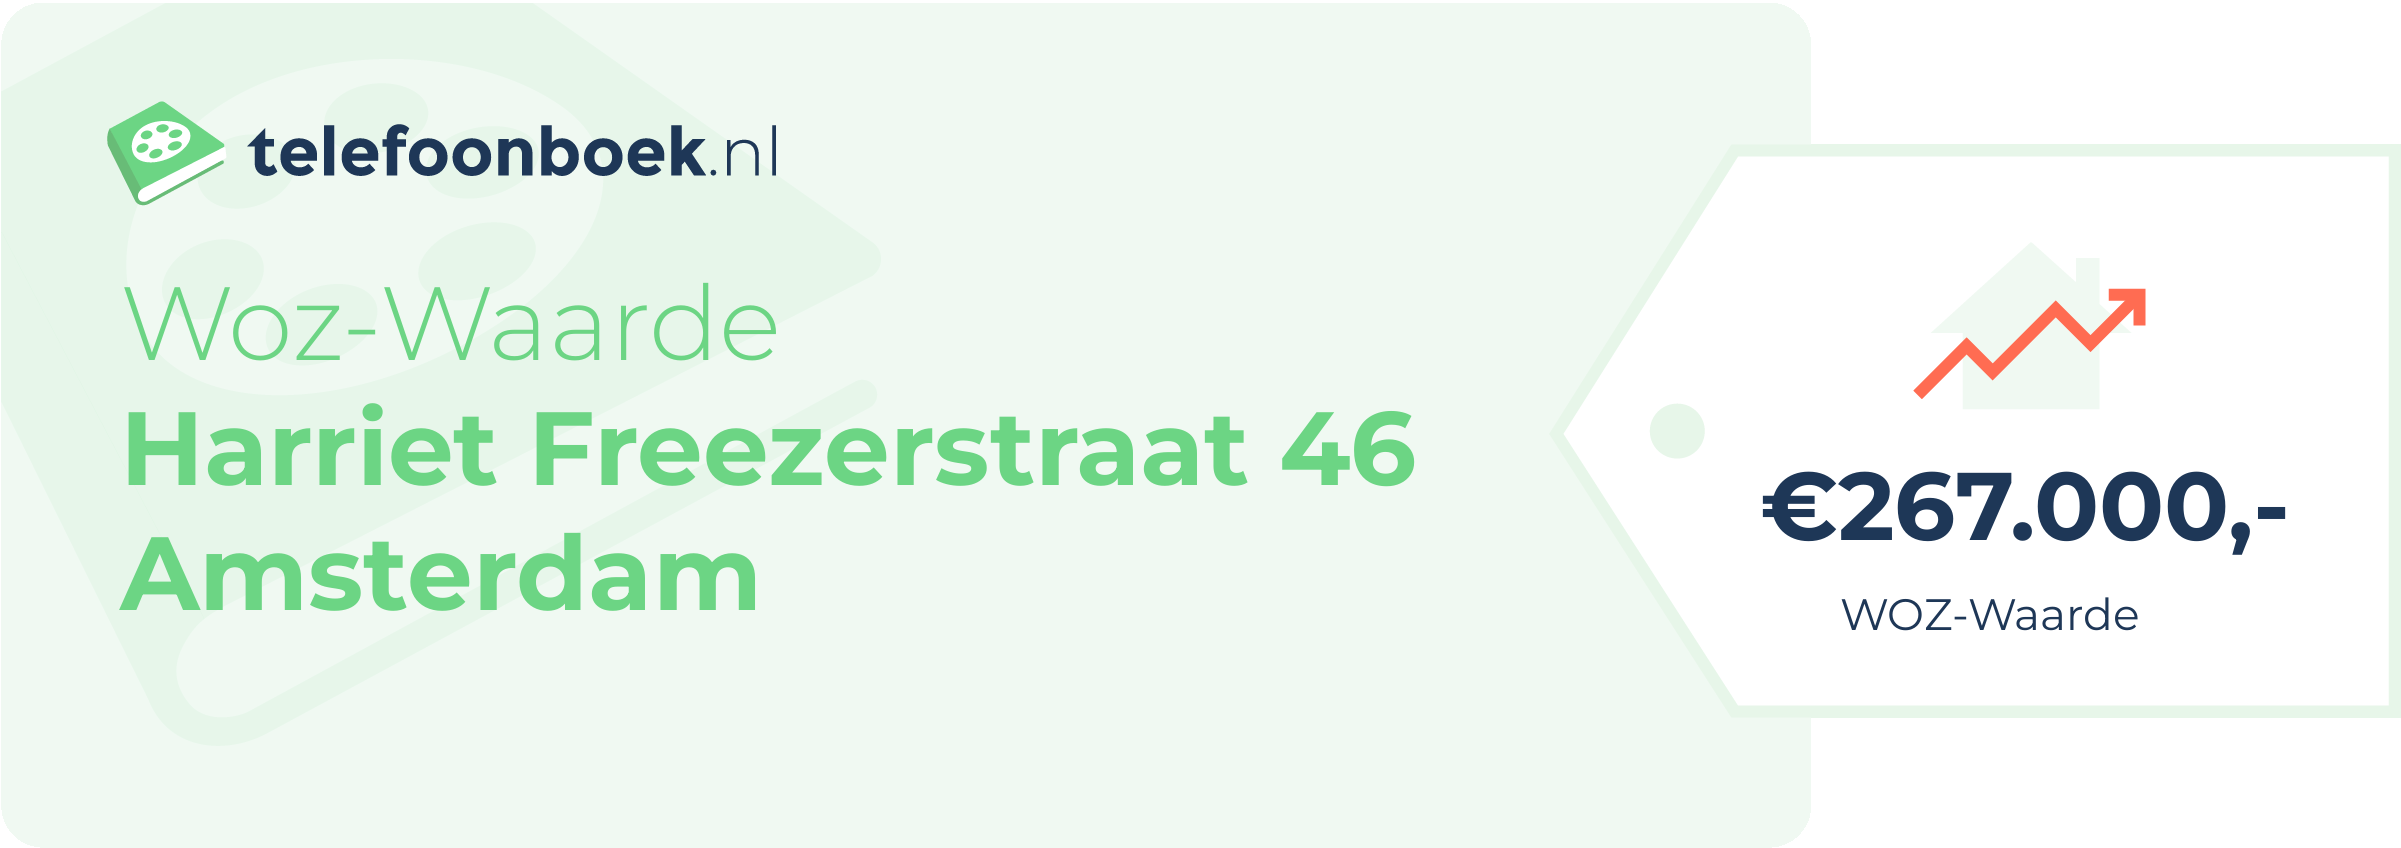 WOZ-waarde Harriet Freezerstraat 46 Amsterdam